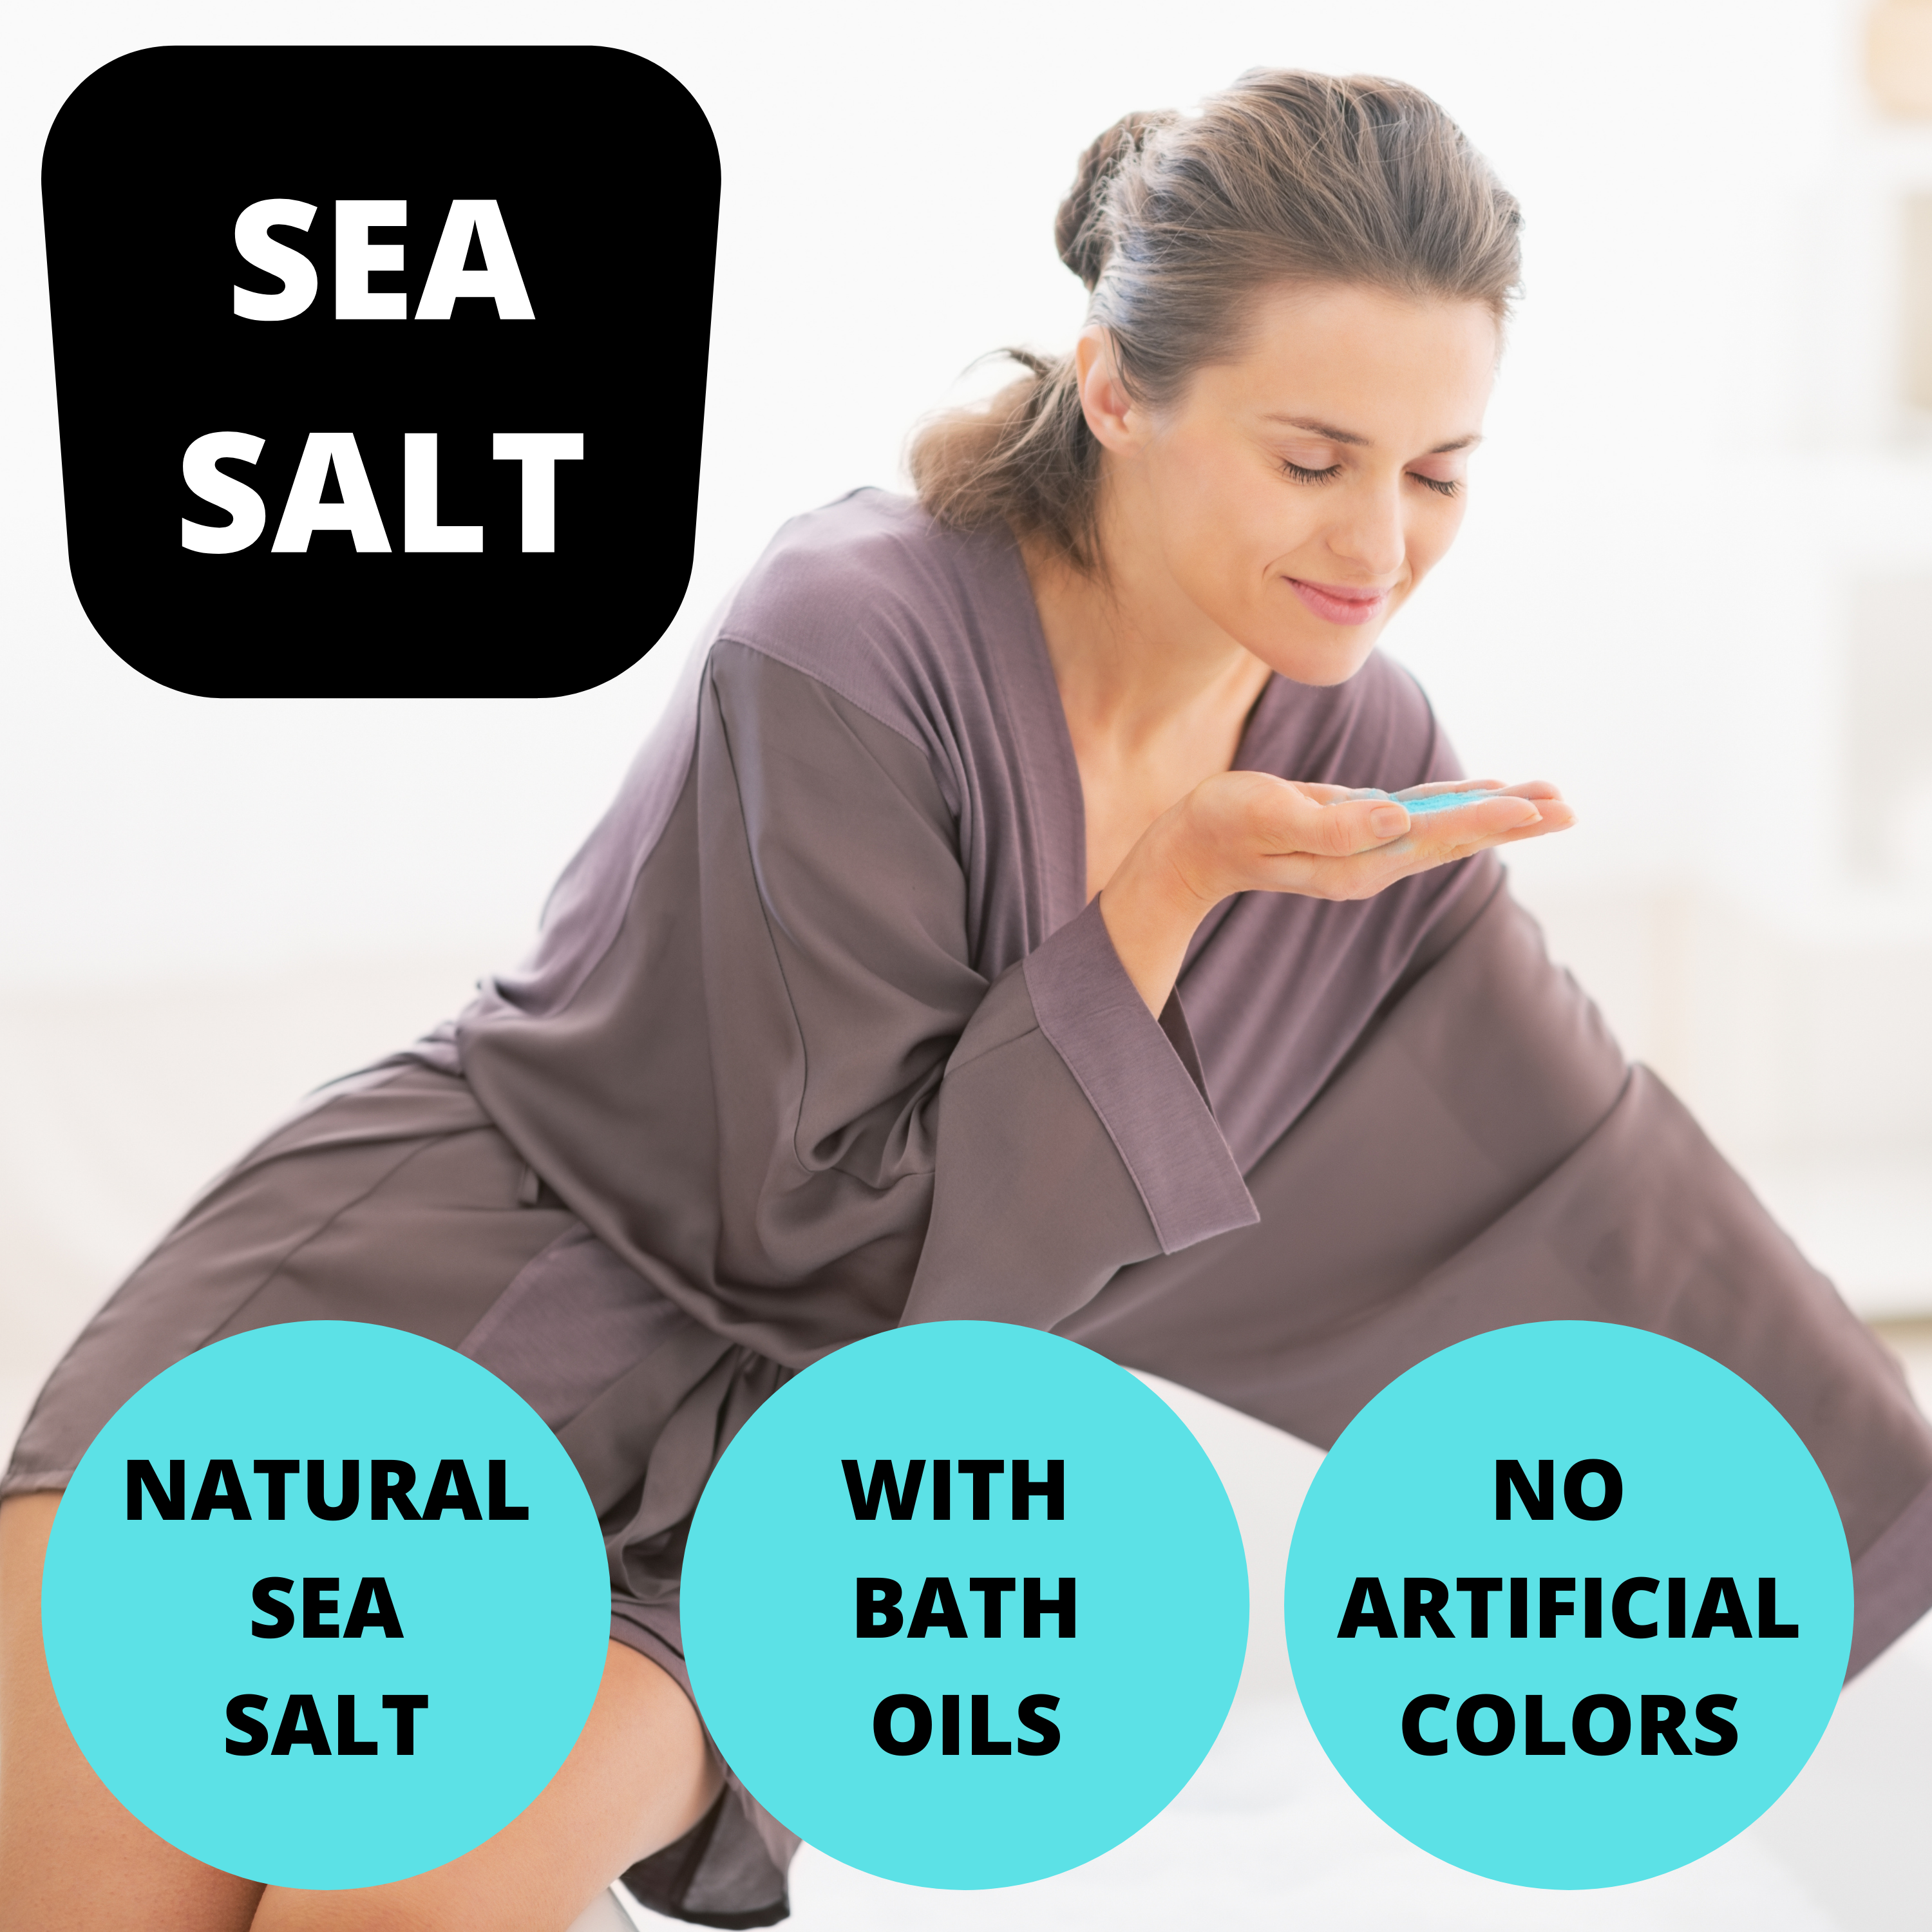 Black Canyon Juniper Mint Scented Sea Salt Bath Soak